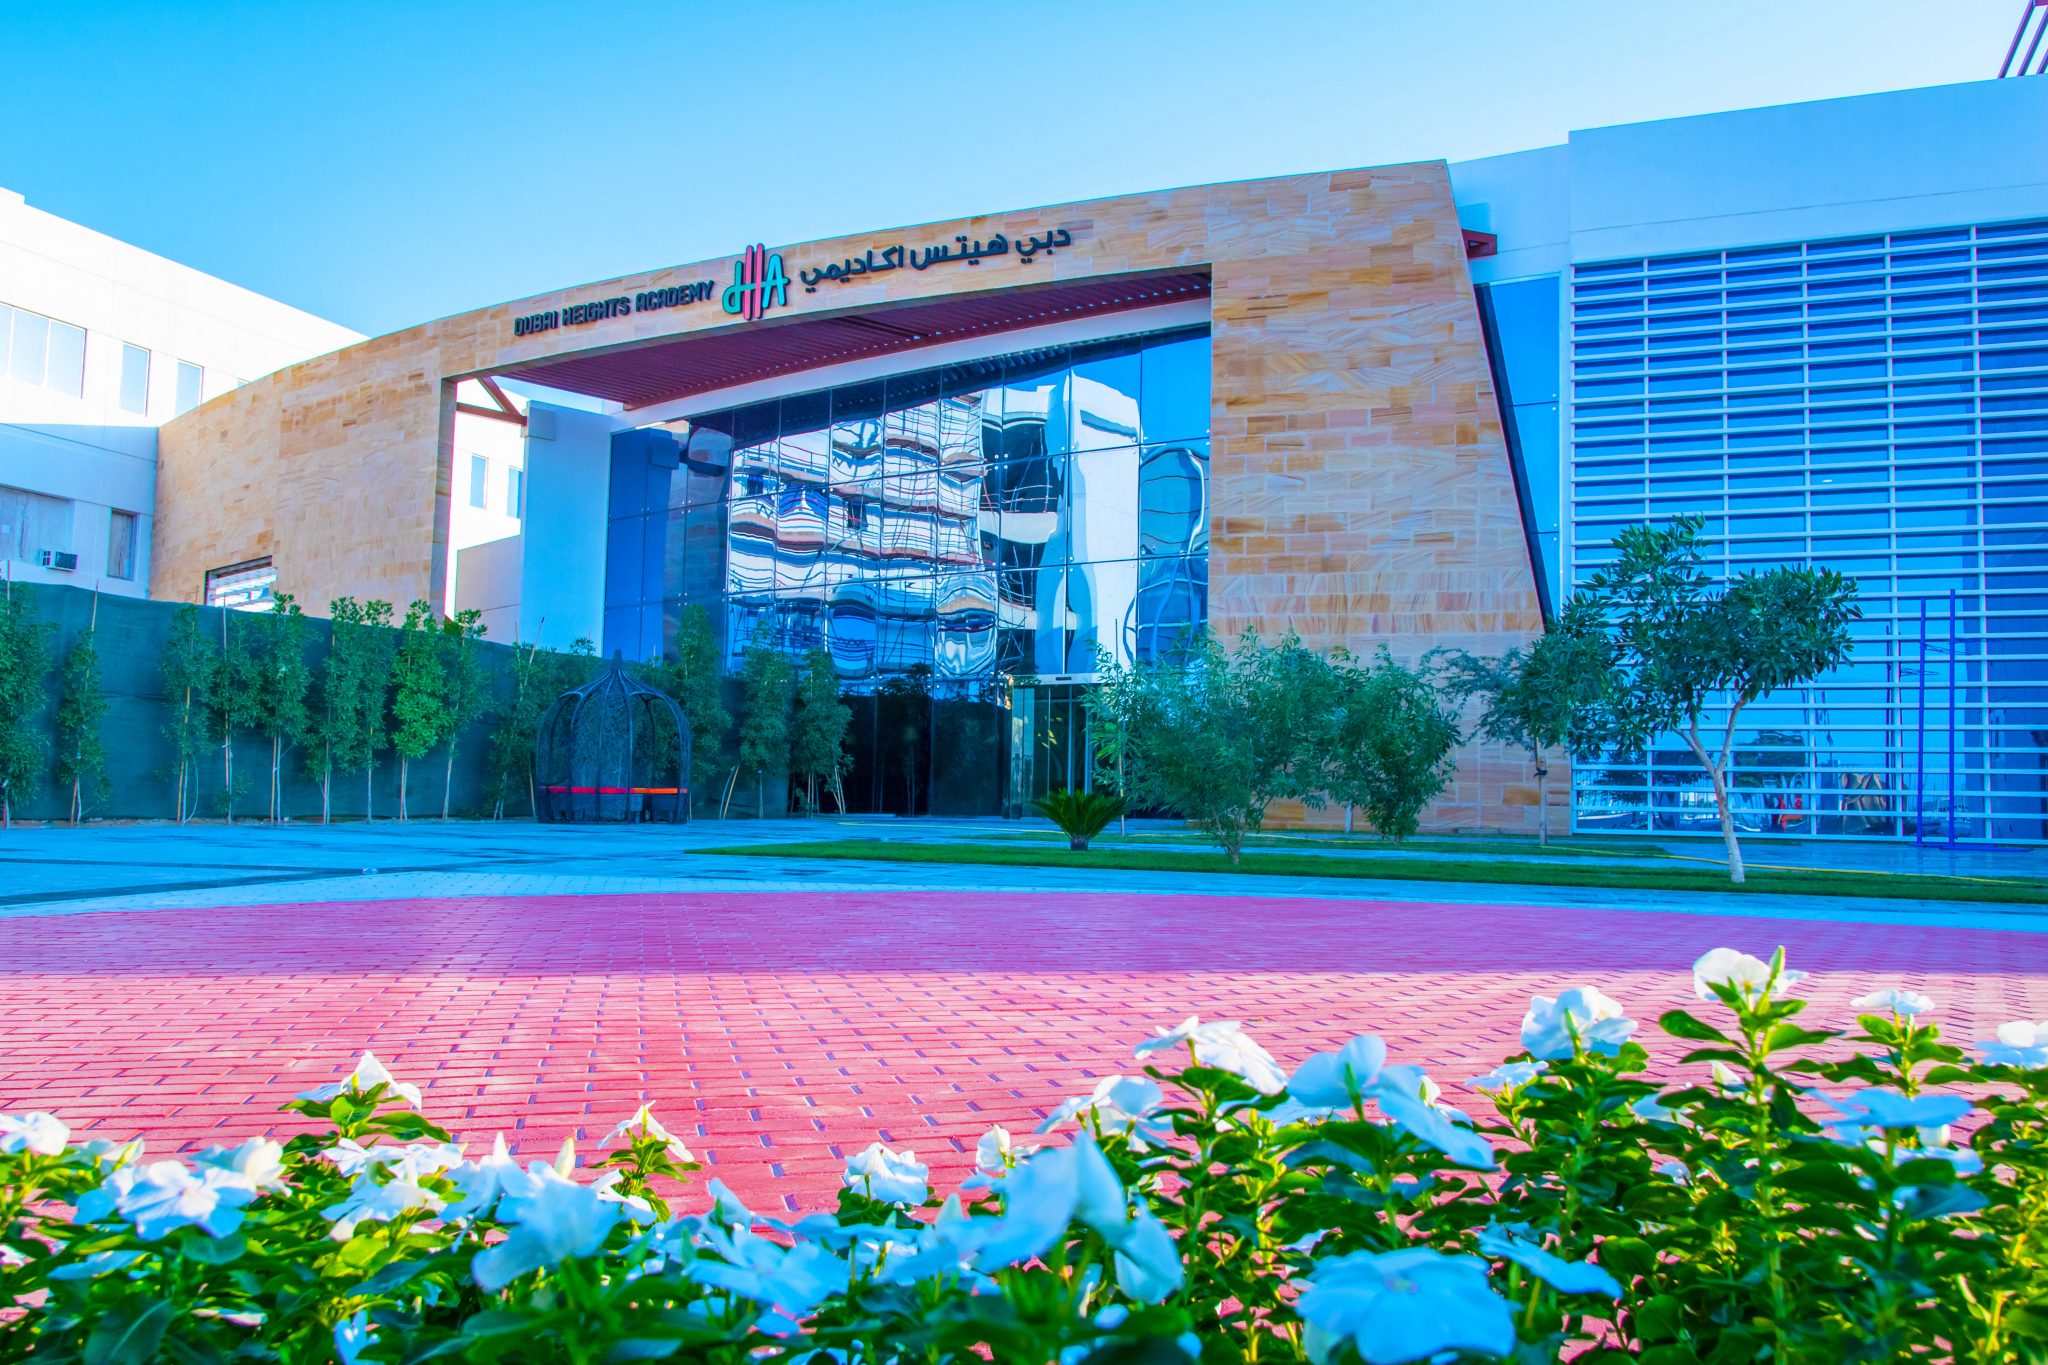 Fotografía que muestra la prestigiosa entrada a Dubai Heights Academy en Dubai